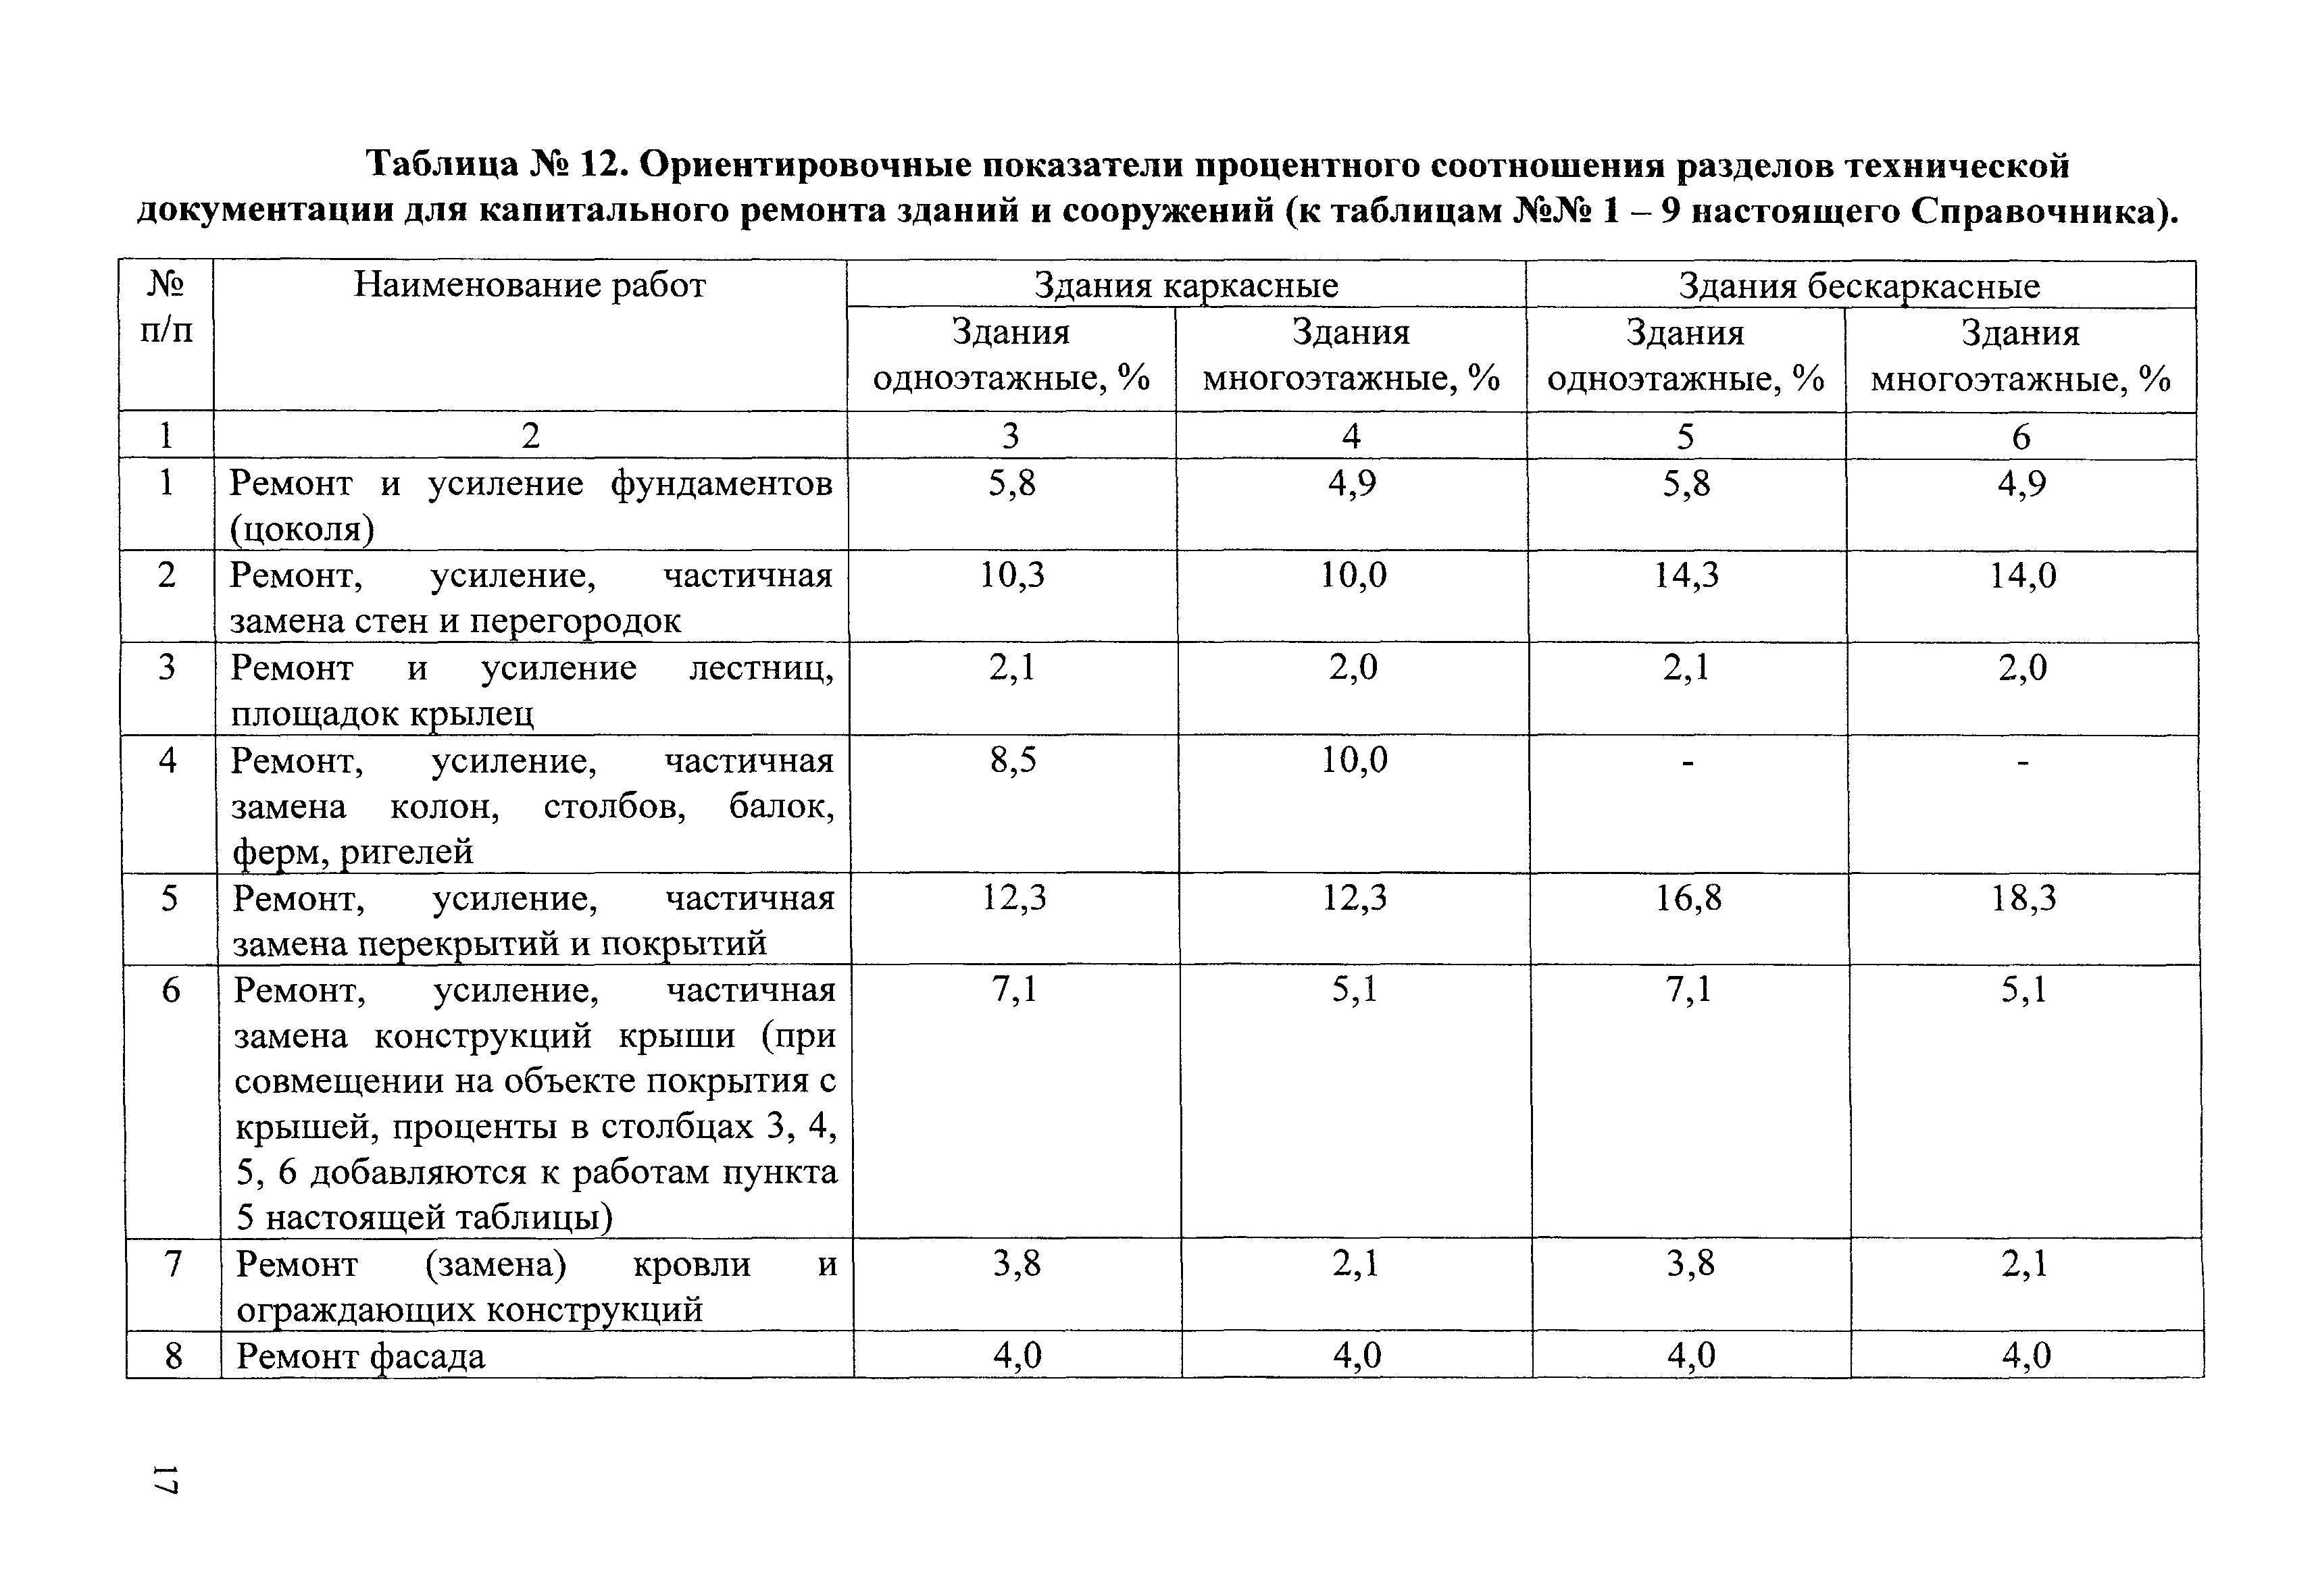 Таблица проведения капитального ремонта производственного здания